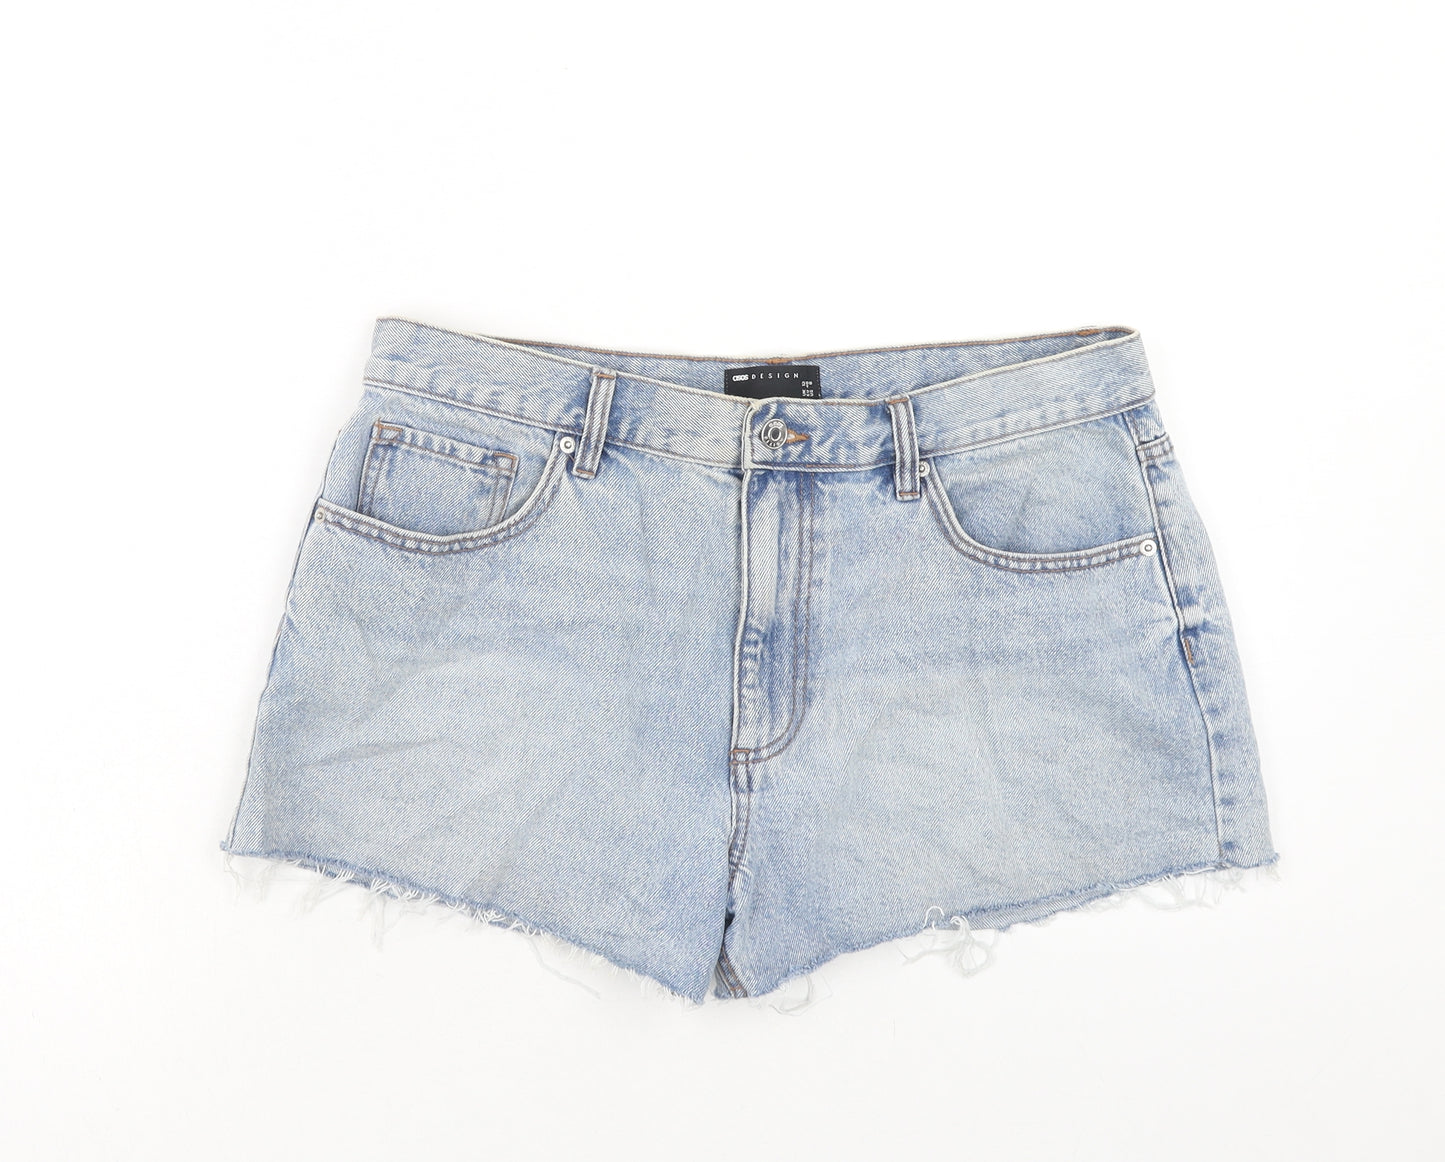 ASOS Womens Blue Cotton Cut-Off Shorts Size 12 Regular Zip